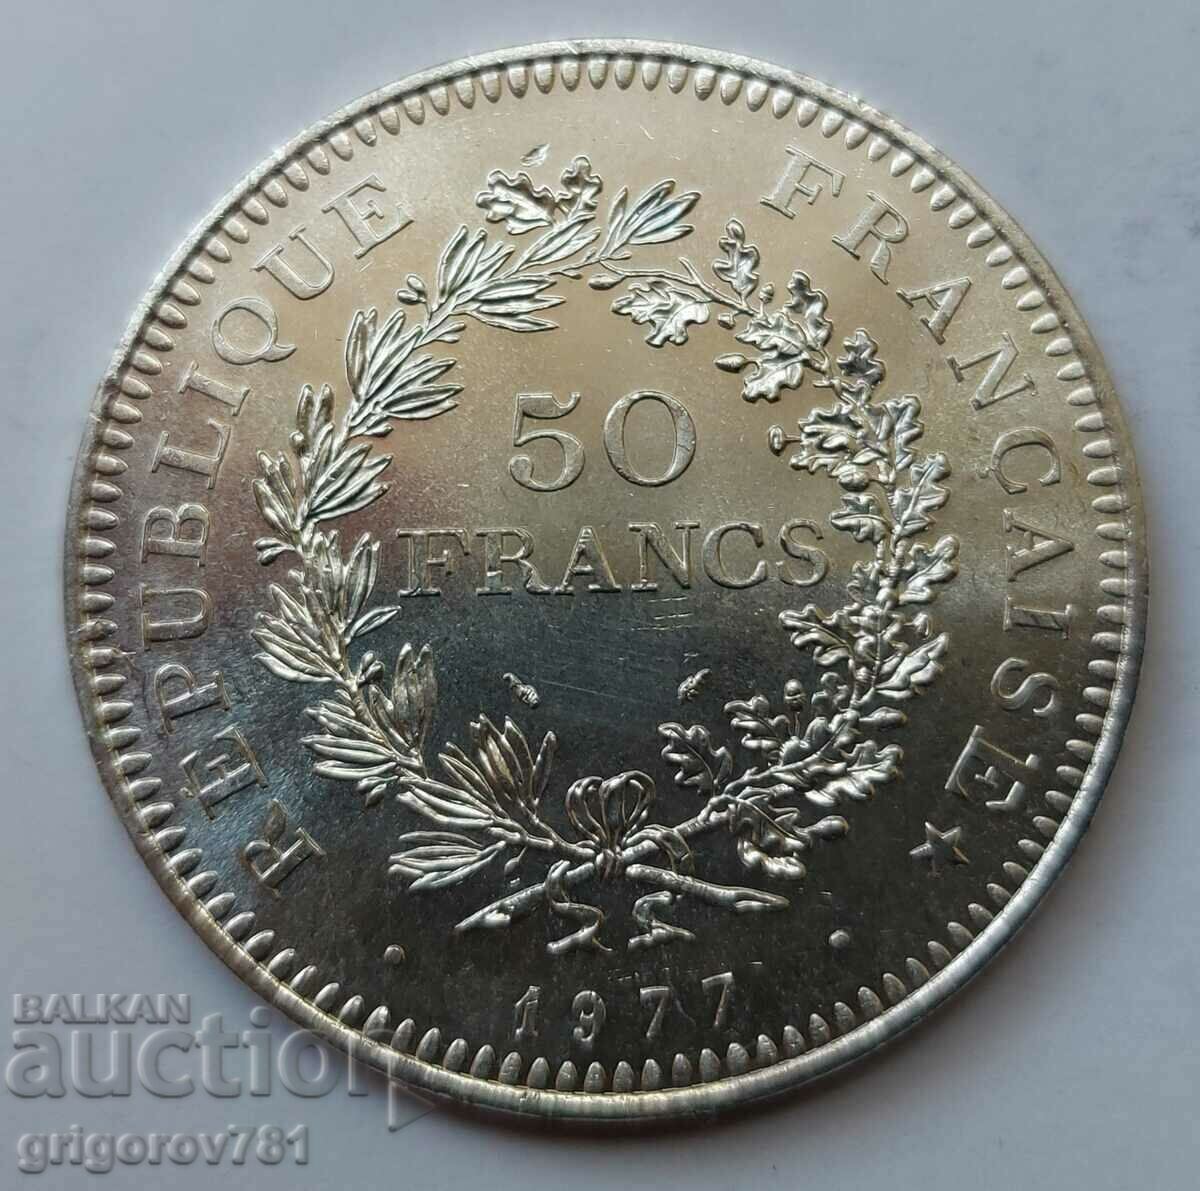 Ασήμι 50 φράγκων Γαλλία 1977 - Ασημένιο νόμισμα #43